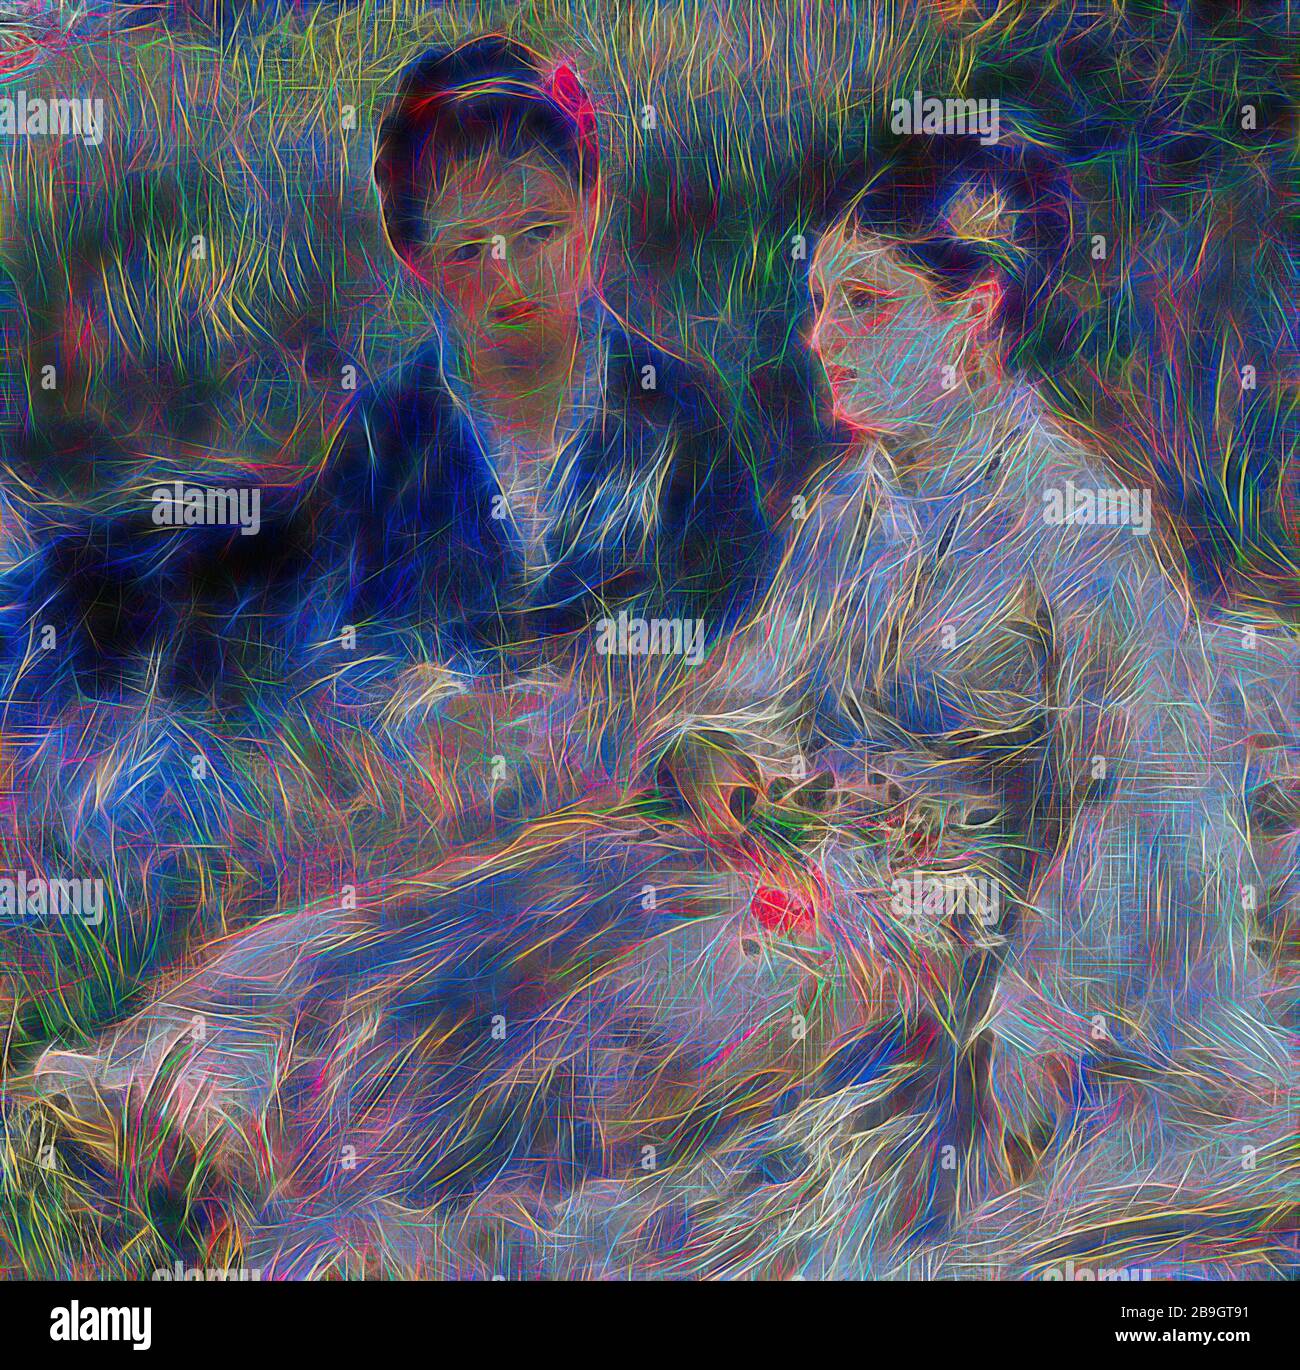 Pierre-Auguste Renoir: On the Grass (Jeunes femmes assises dans l'herbe), Pierre-Auguste Renoir, c Im Jahr 1873, Öl auf Leinwand, entspannen sich zwei Frauen, die modische Kleider tragen, im Gras; eine, so scheint es, hat gerade einen Blumenstrauß gepflückt. Es ist schwer zu sagen, ob die Szene in einem Pariser Garten stattfindet - vielleicht in einem privaten, überwucherten - oder ob die Frauen auf dem Land irgendwo außerhalb der Stadt sind. Klar ist, dass Renoir hier en plein aire malte und seine Leinwand nach draußen brachte, um direkt vor seinem Thema zu arbeiten. Beachten Sie, wie aufmerksam er auf die sich ändernden Bedingungen der nat ist Stockfoto